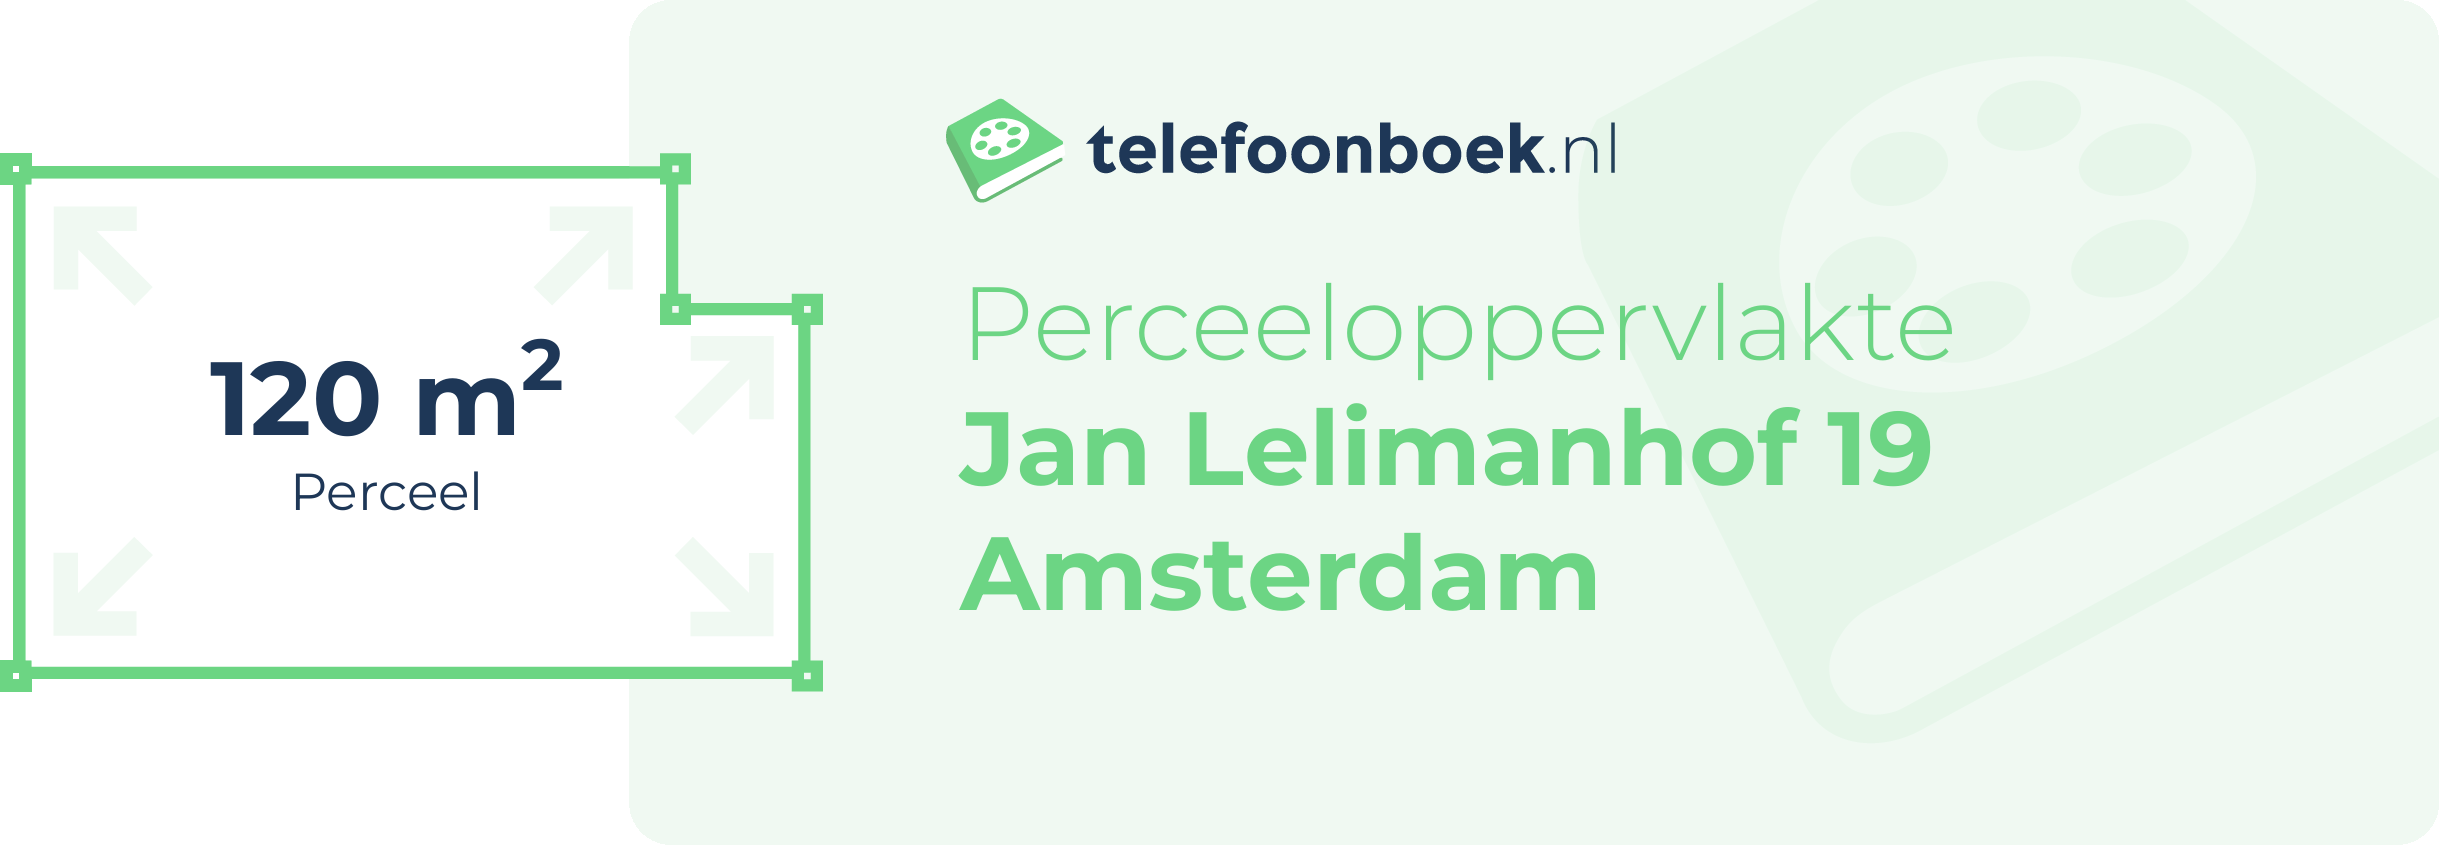 Perceeloppervlakte Jan Lelimanhof 19 Amsterdam